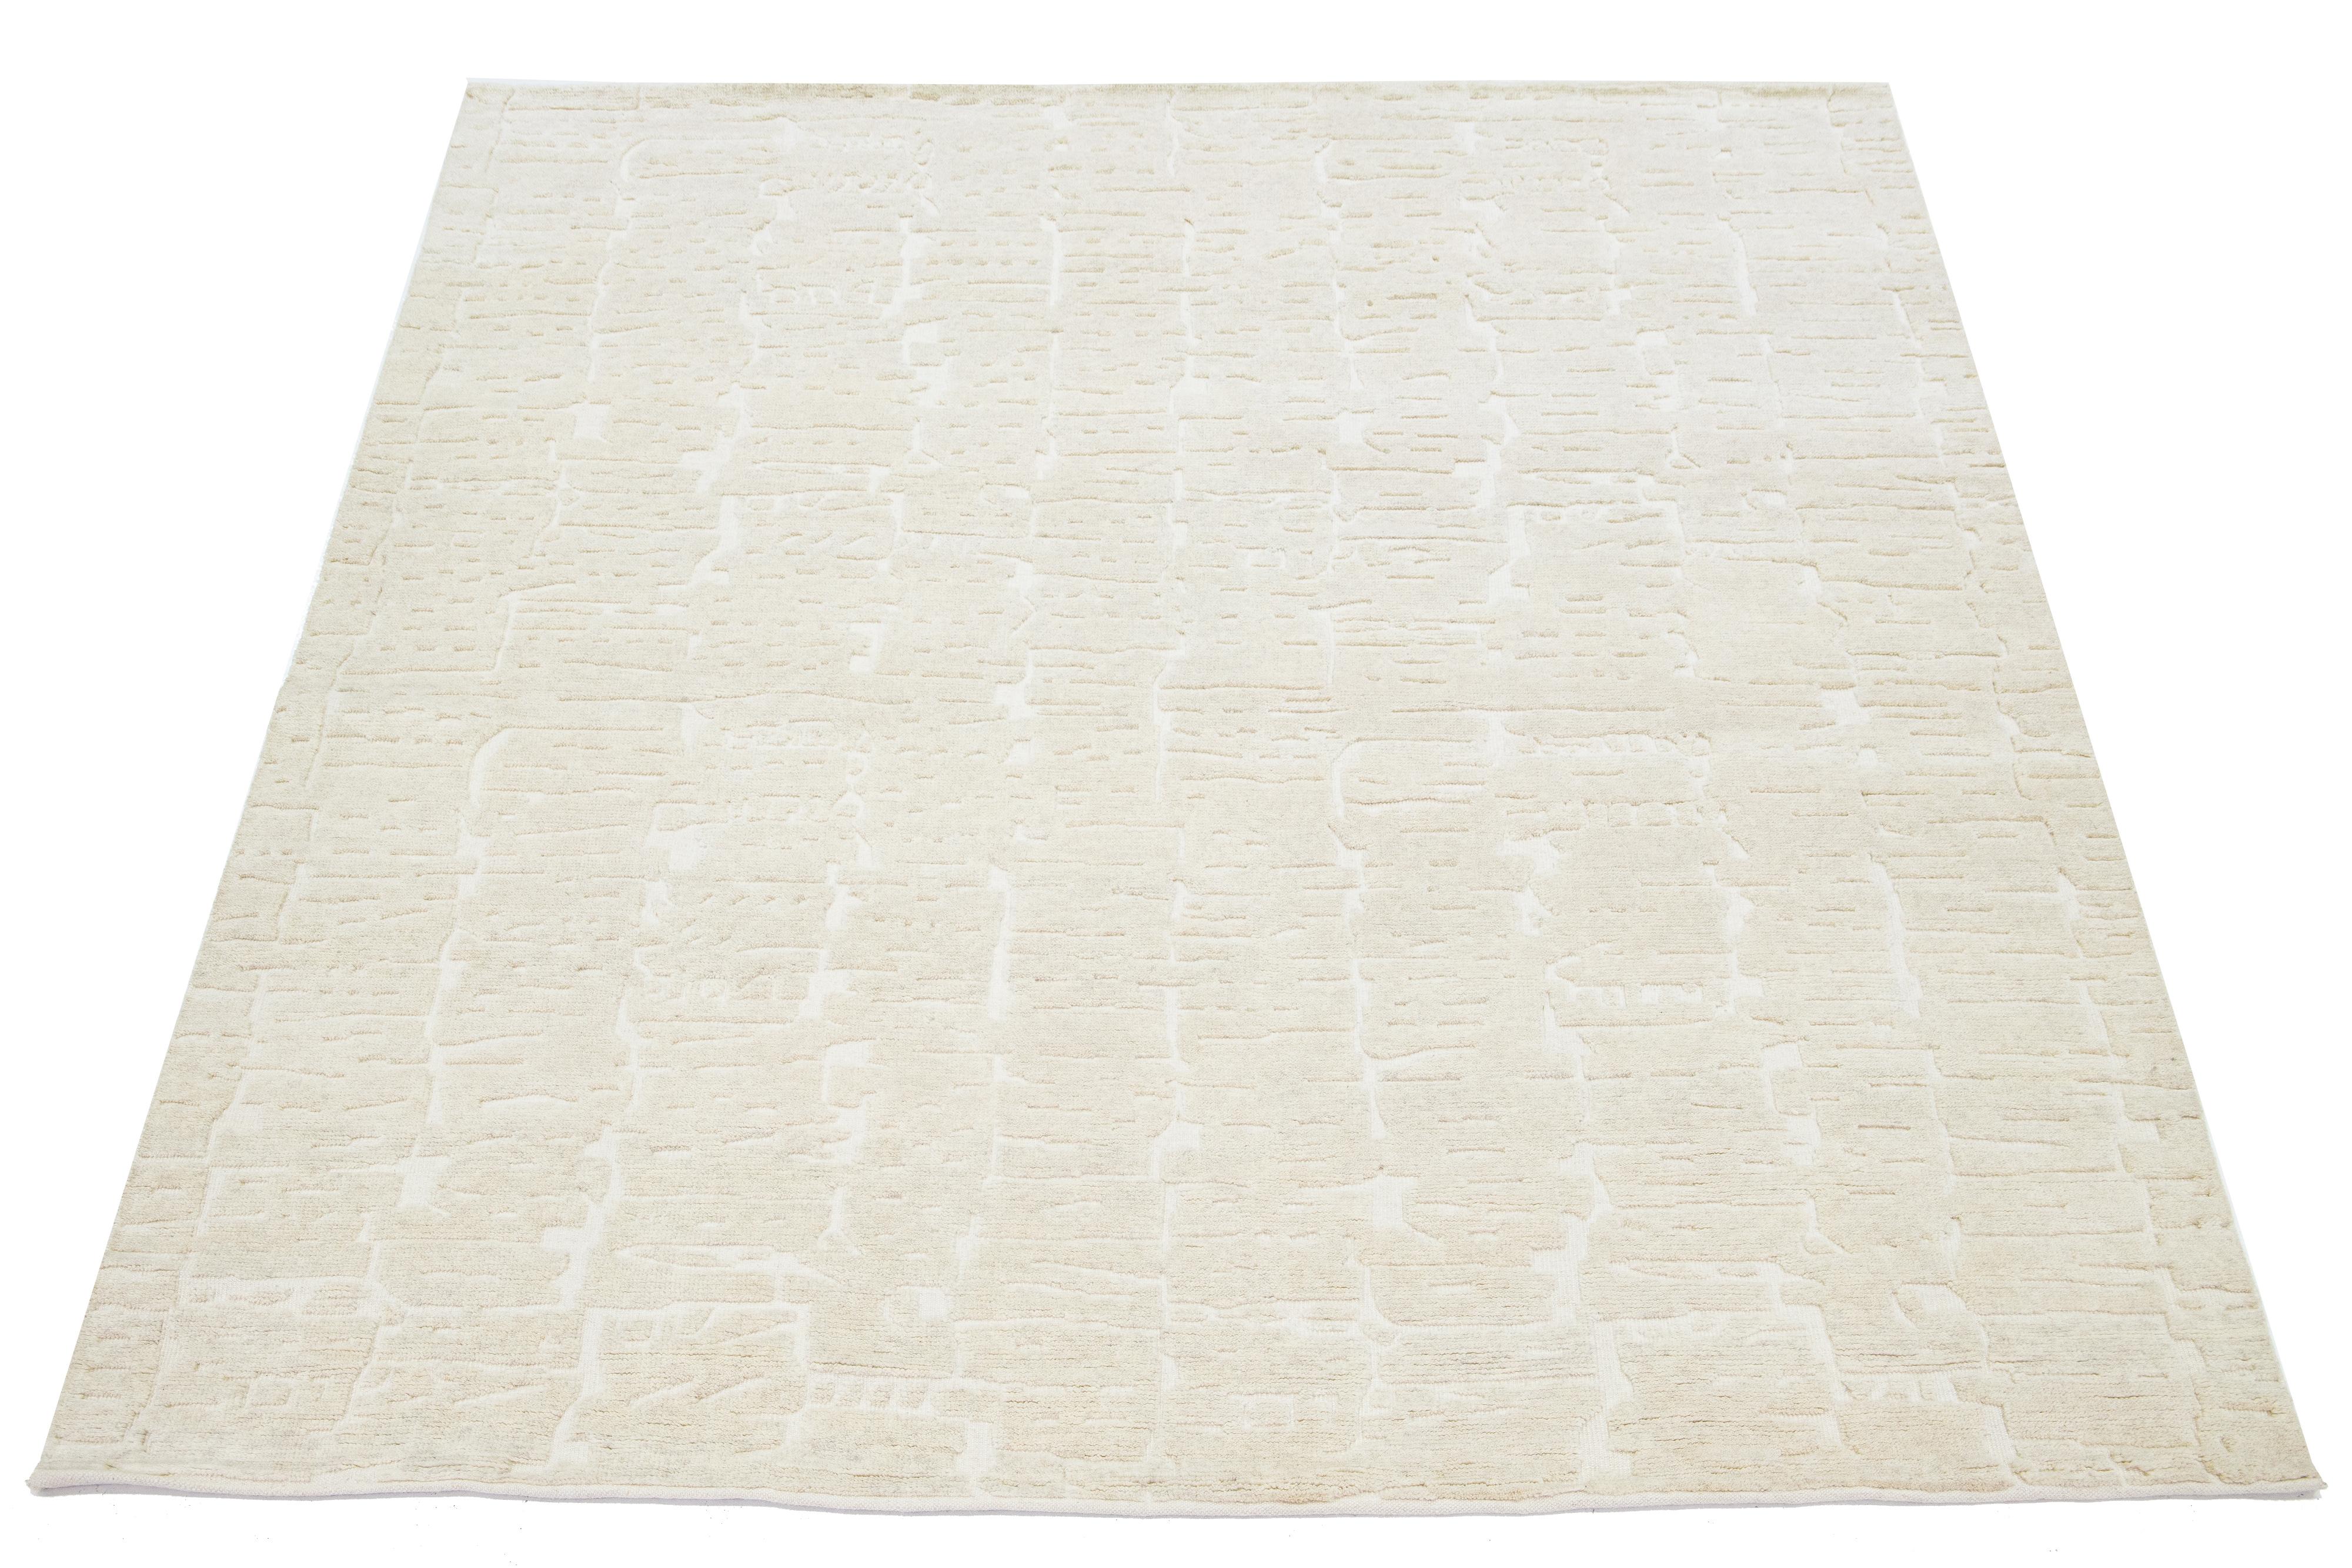 Ce tapis en laine de style marocain noué à la main présente une esthétique minimaliste hypnotique sur un champ ivoire naturel au design contemporain.

Ce tapis mesure 8'1